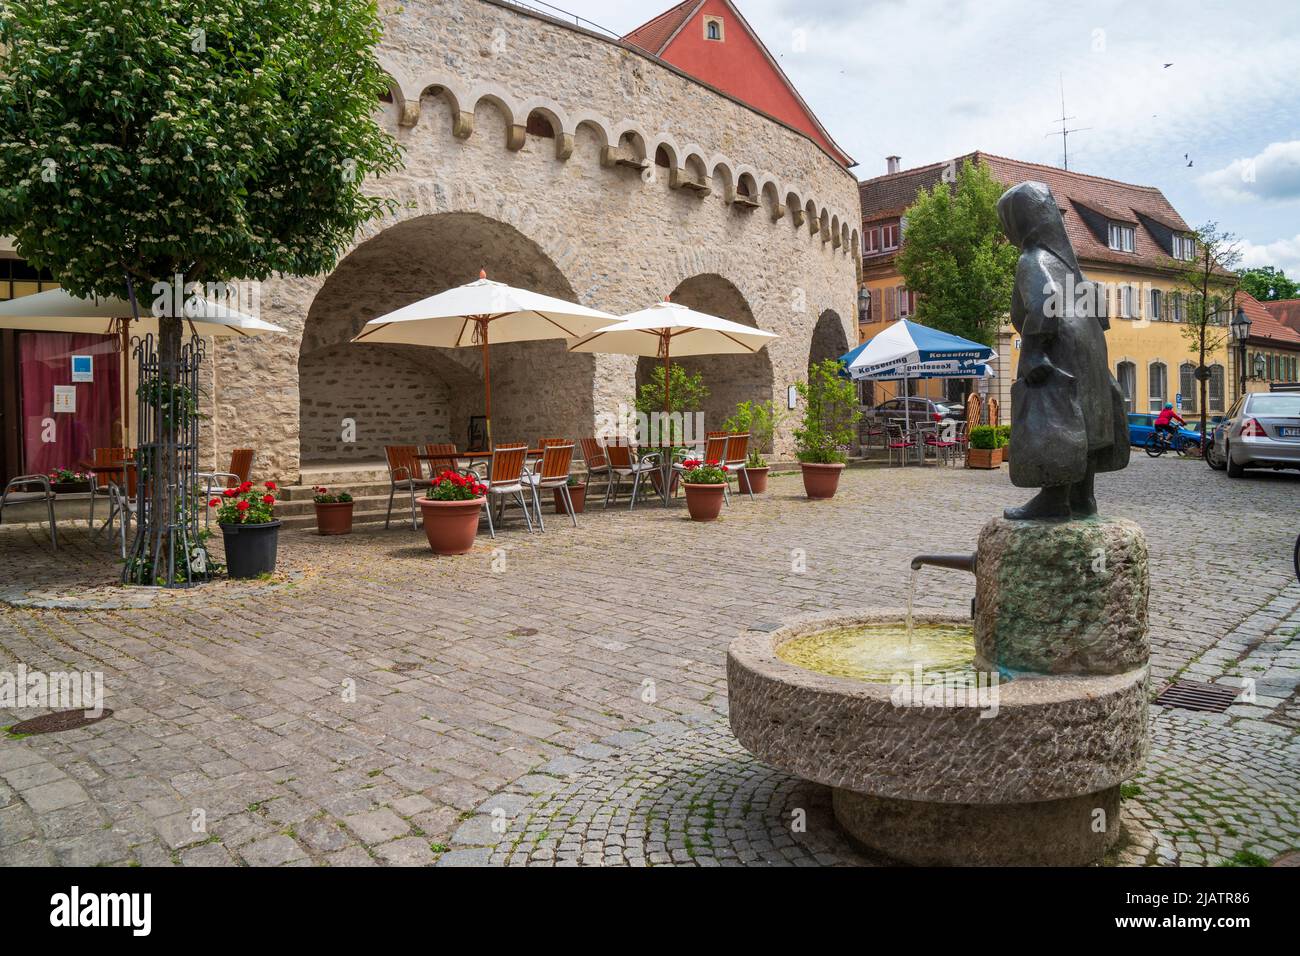 Die historische Altstadt von Dettelbach am Main in Unterfranken mit malerischen Gebäuden innerhalb der Stadtmauer Stock Photo